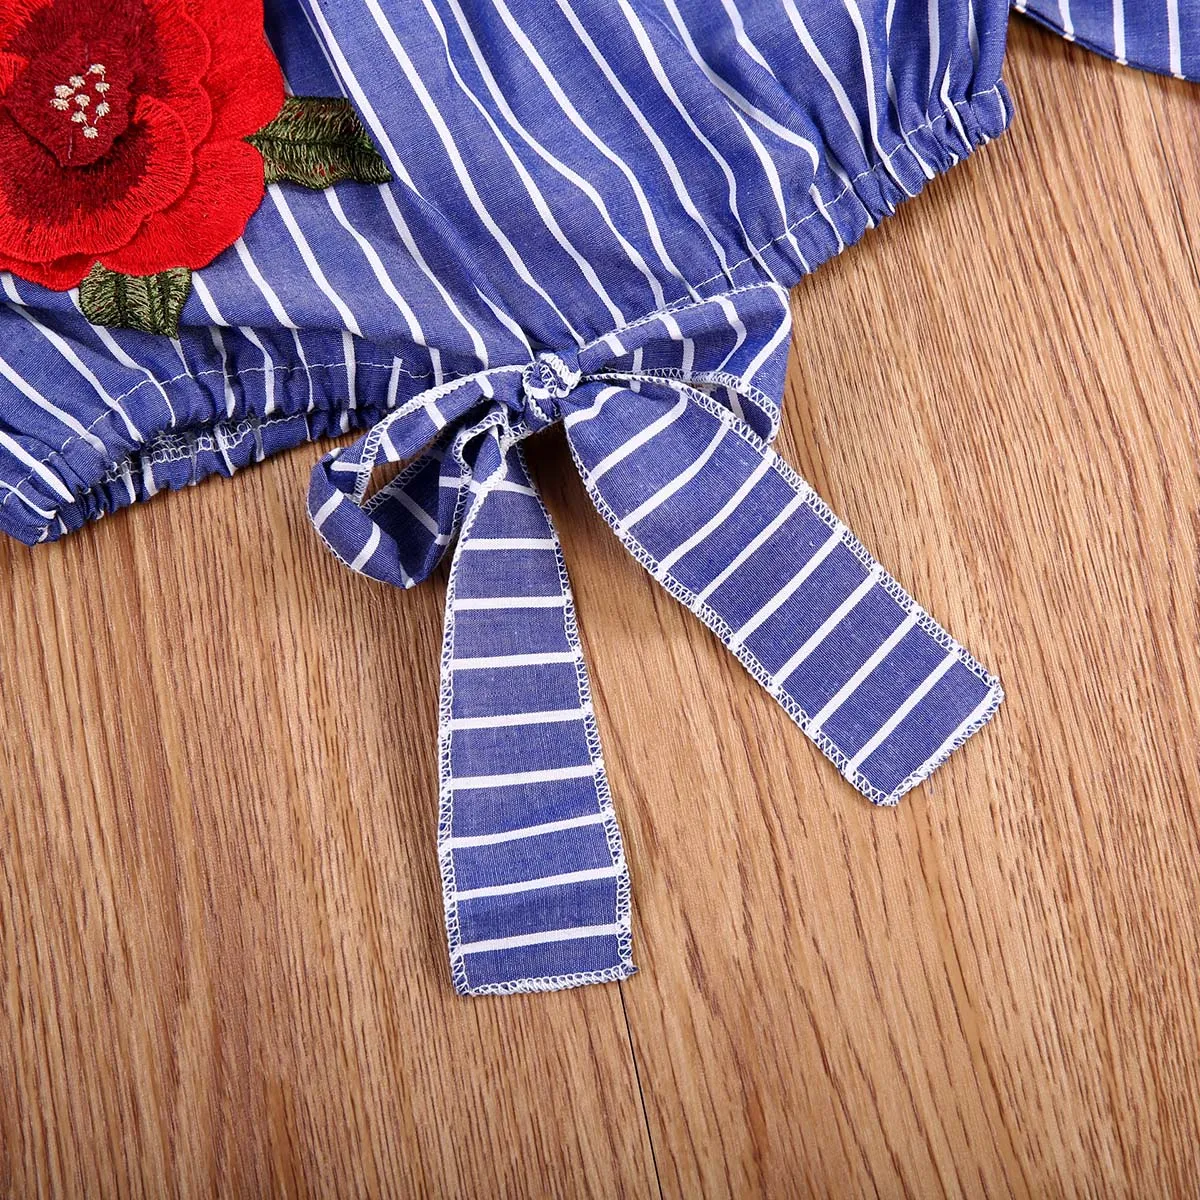 Модная детская одежда для маленьких девочек Полосатые укороченные топы, футболки, блузка джинсовые короткие джинсы, штаны, наряды